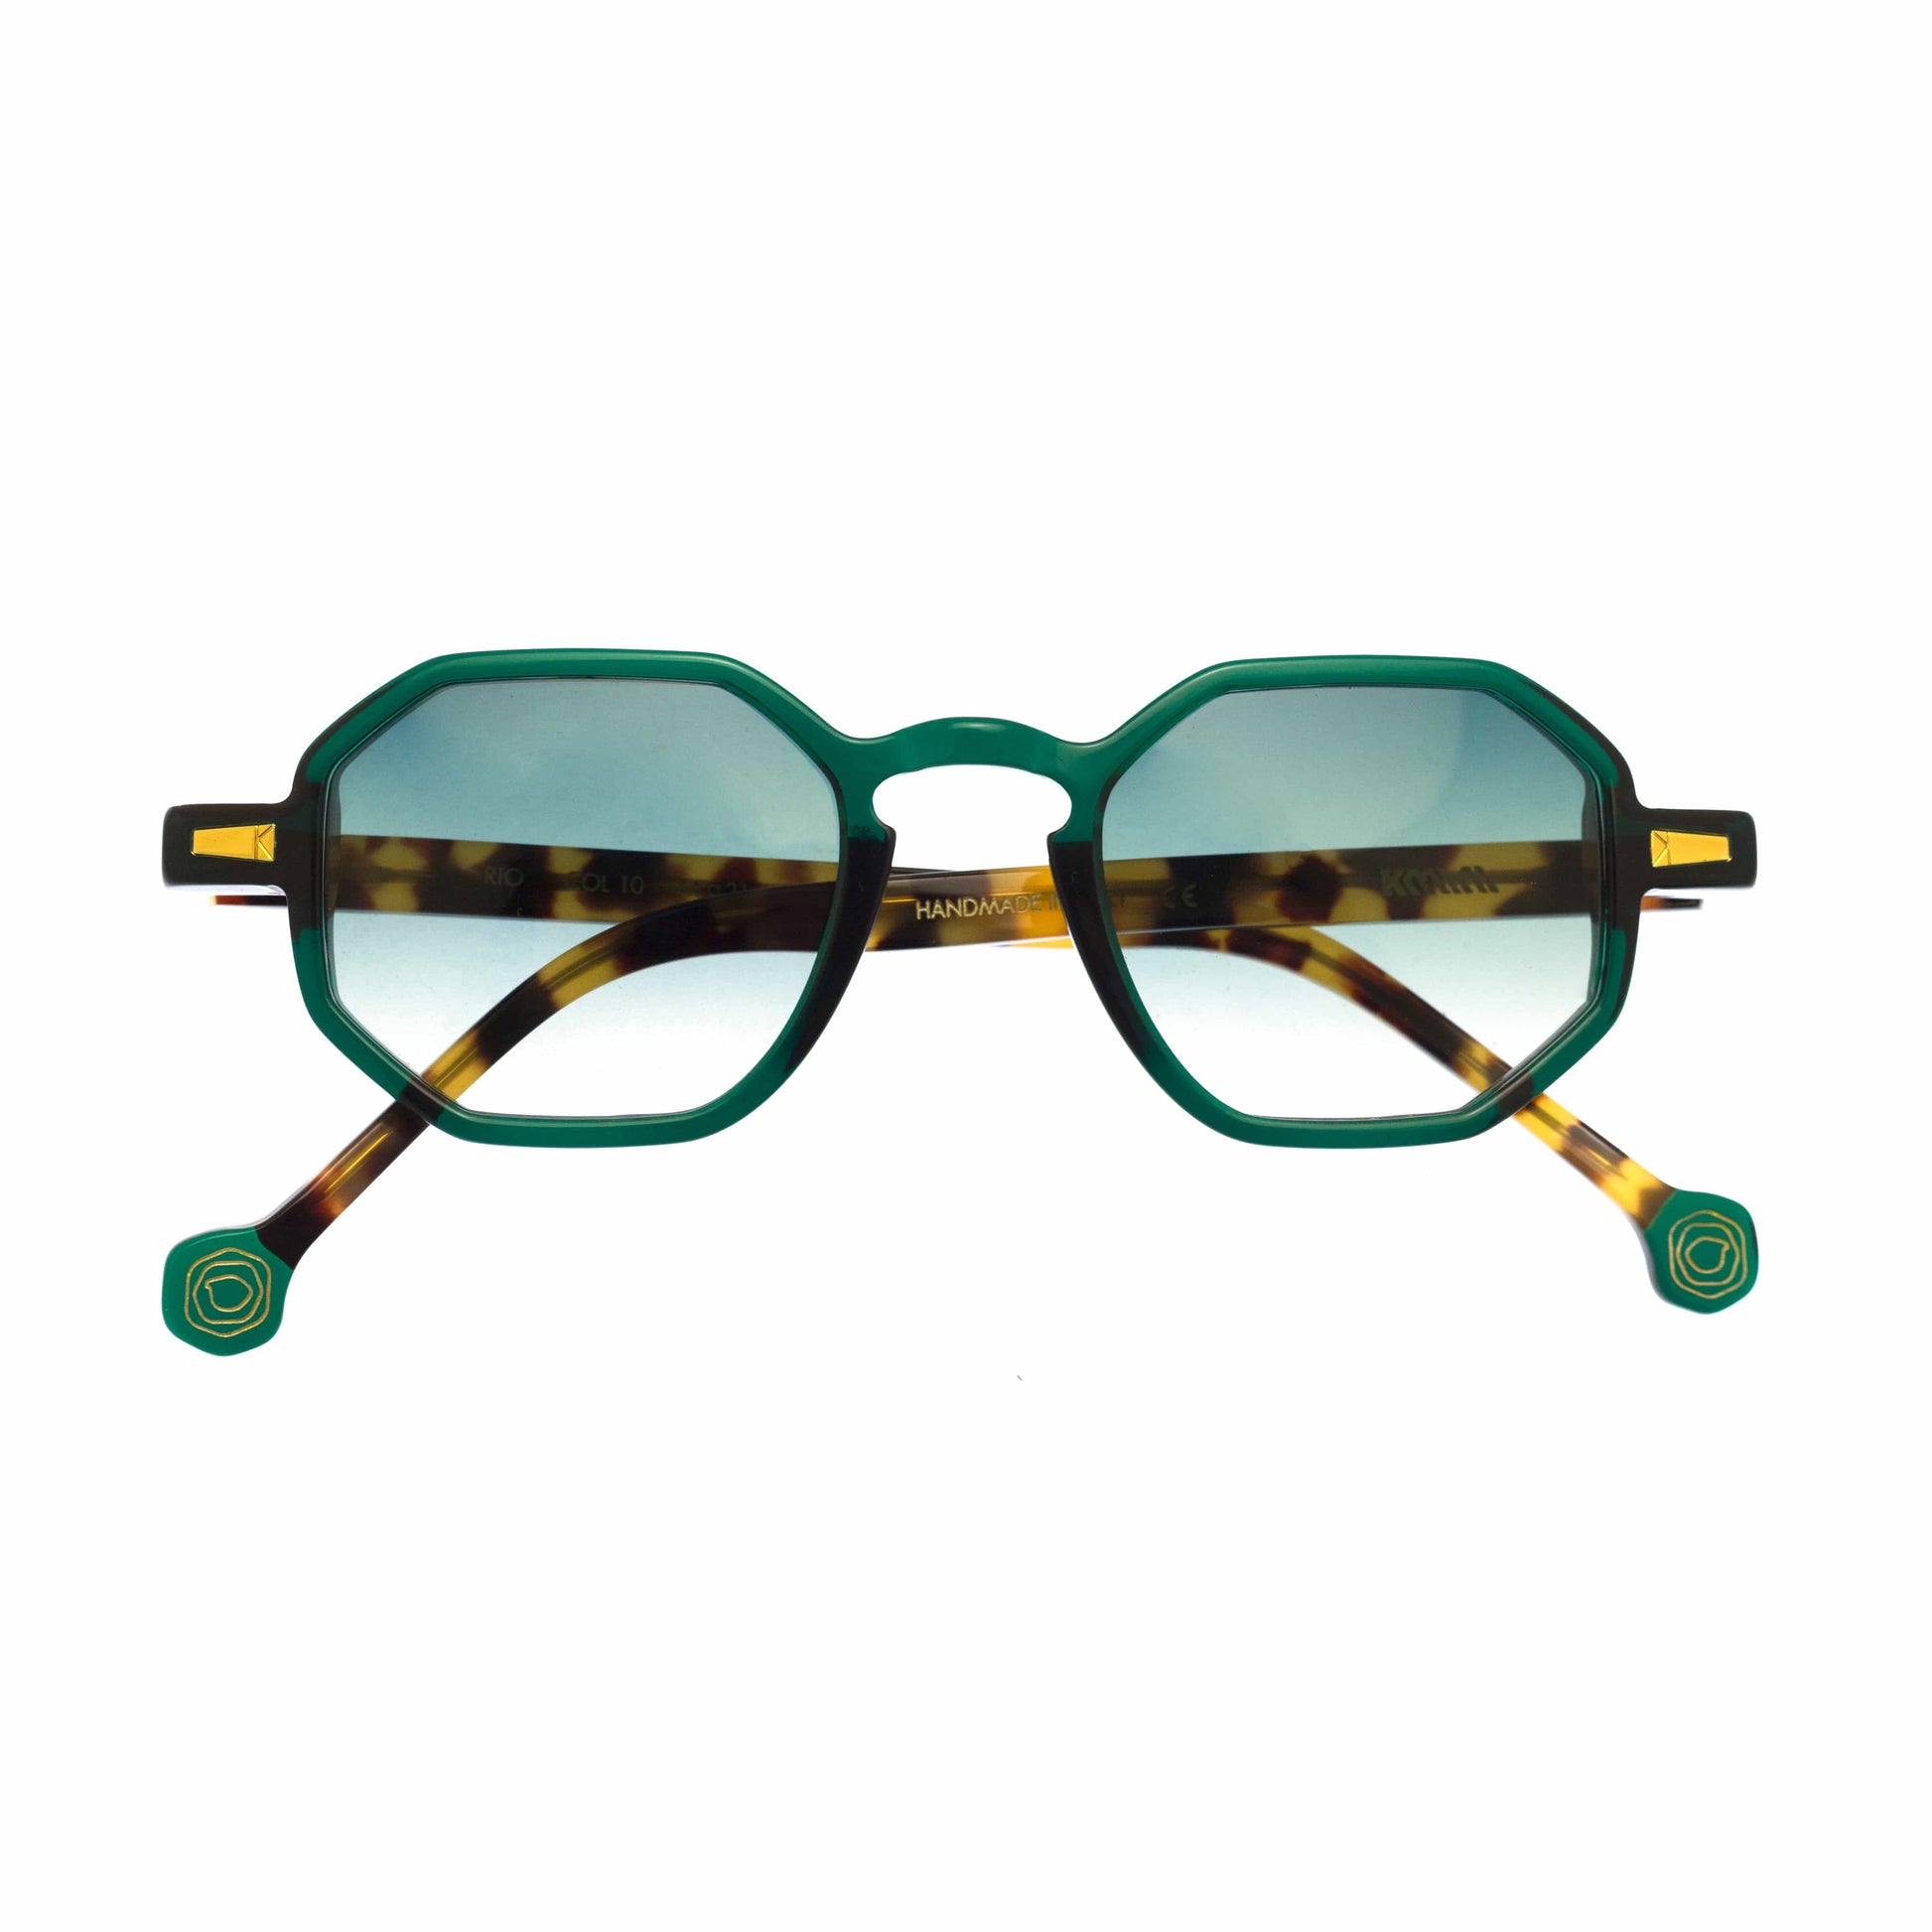 Kyme Occhiali da sole Kyme Rio: occhiale da sole poligonale made in Italy